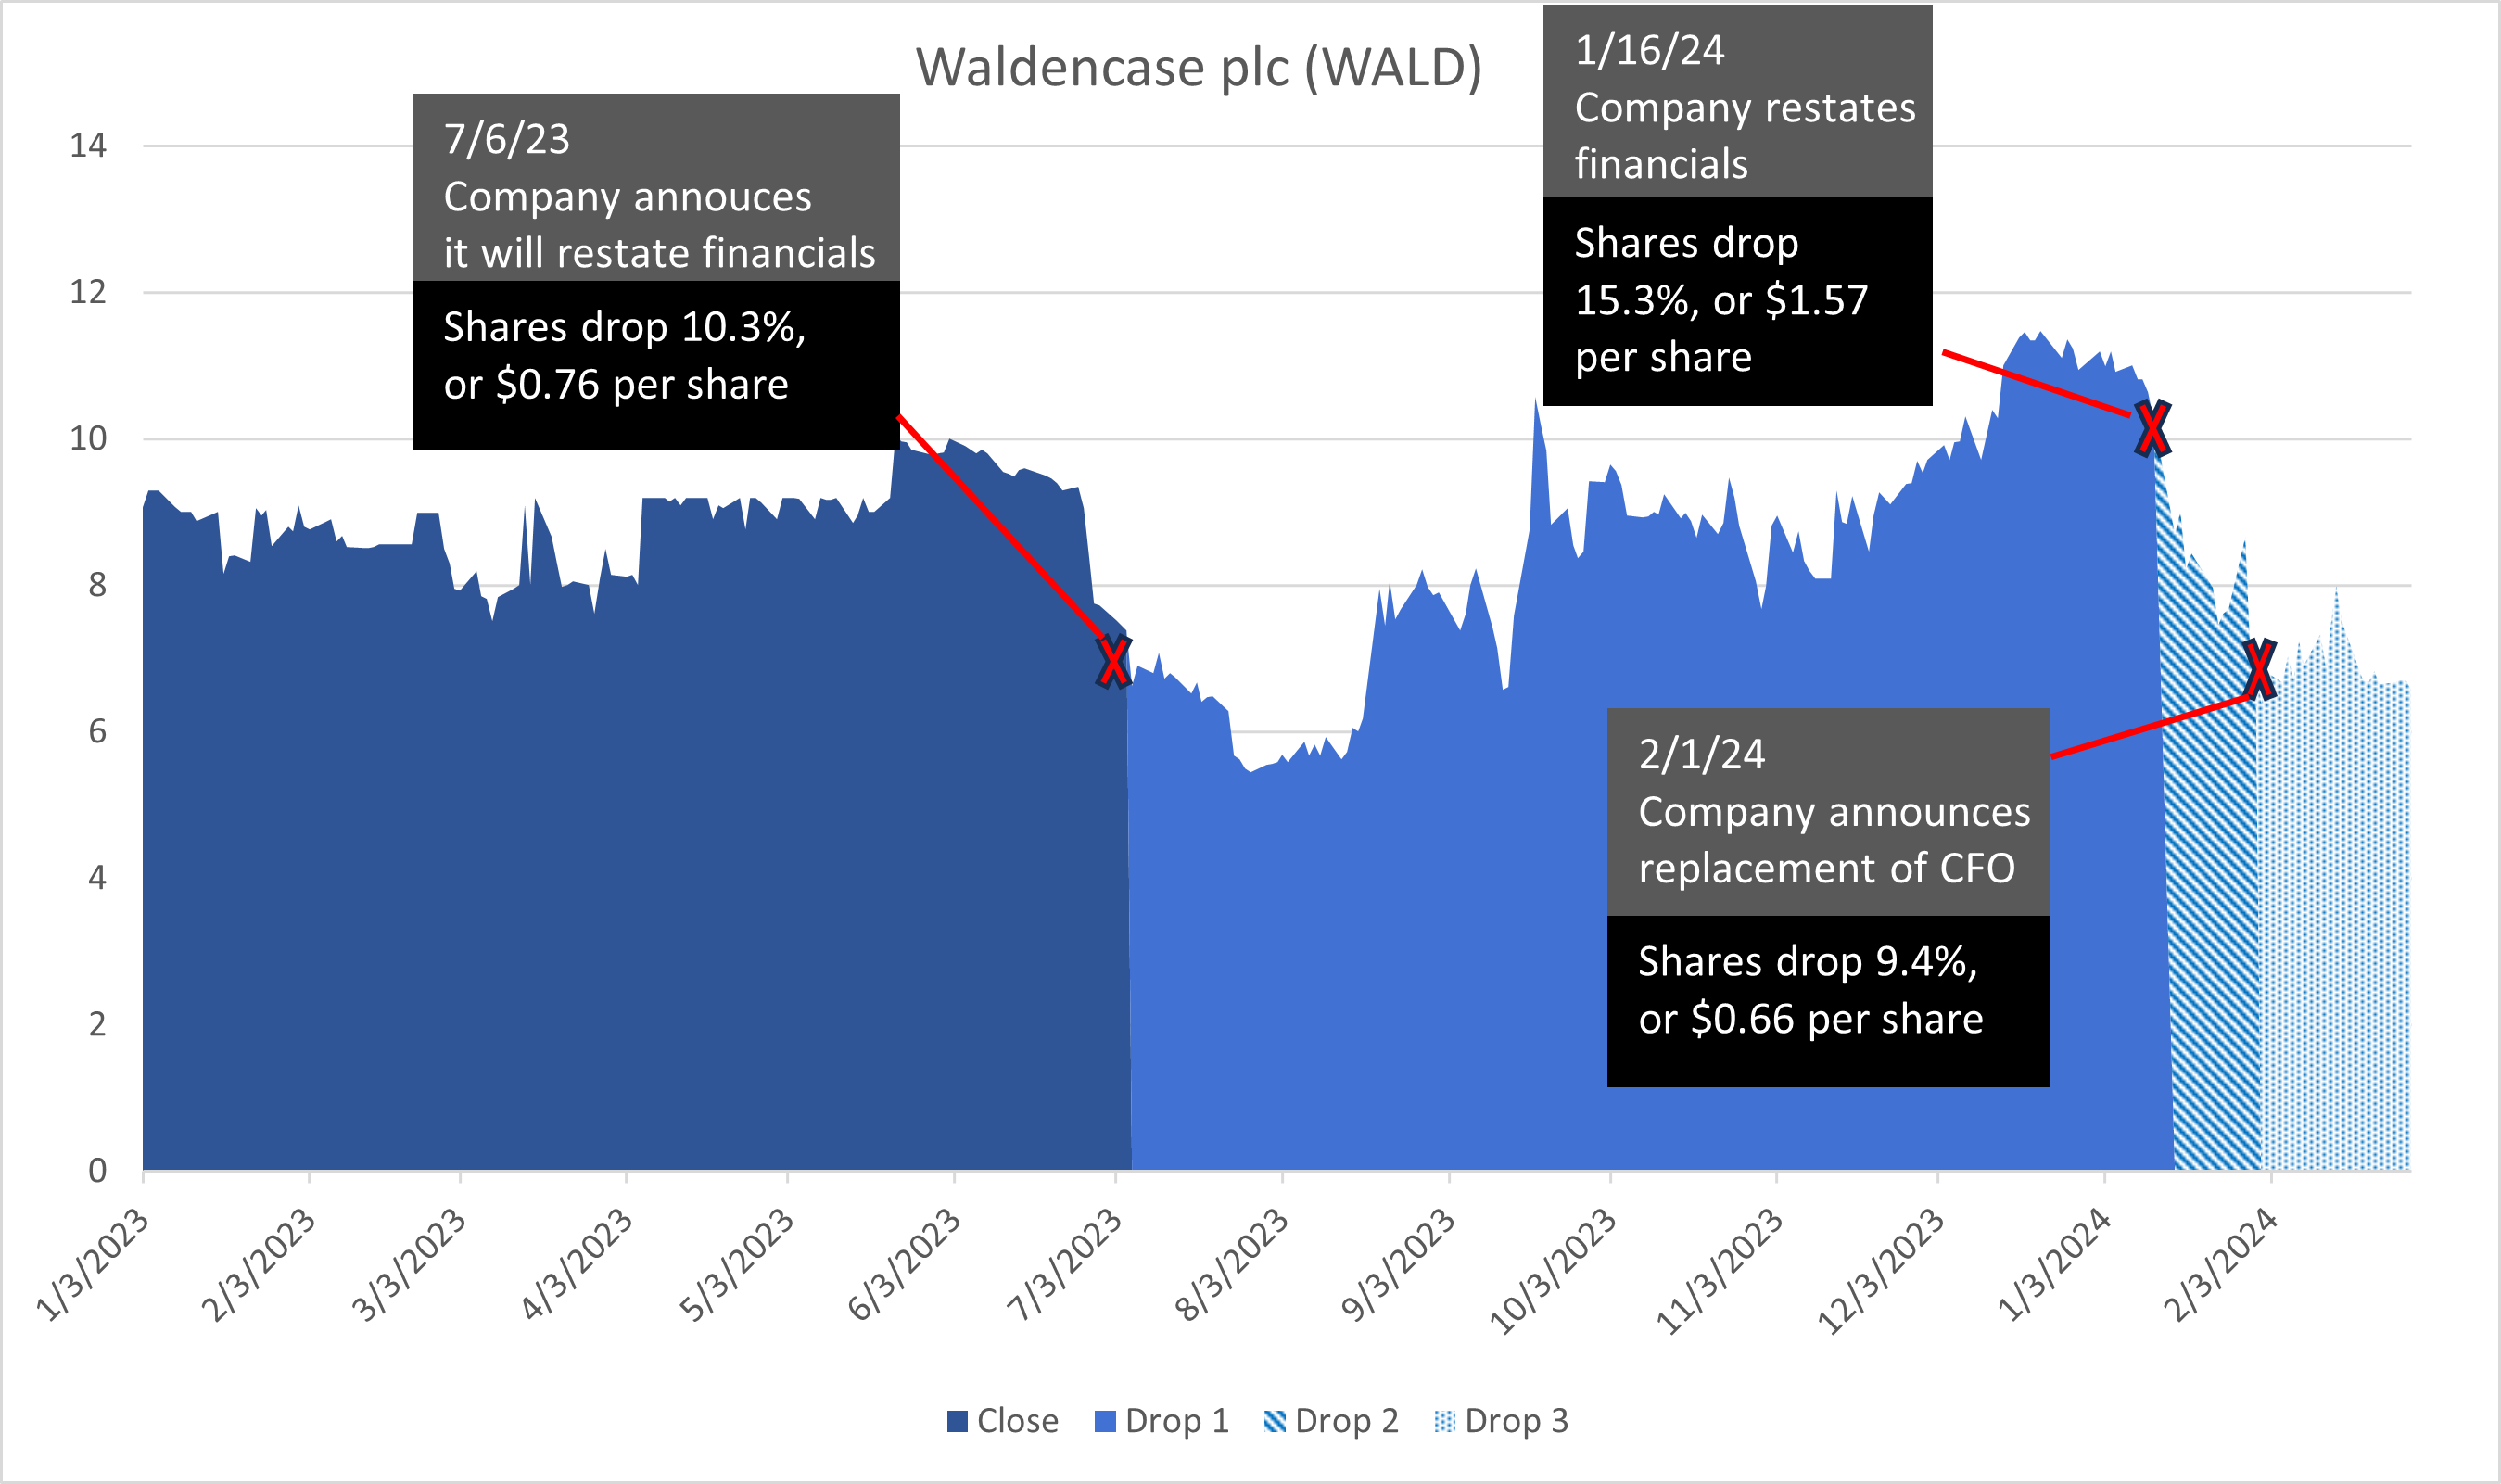 WALD stock chart